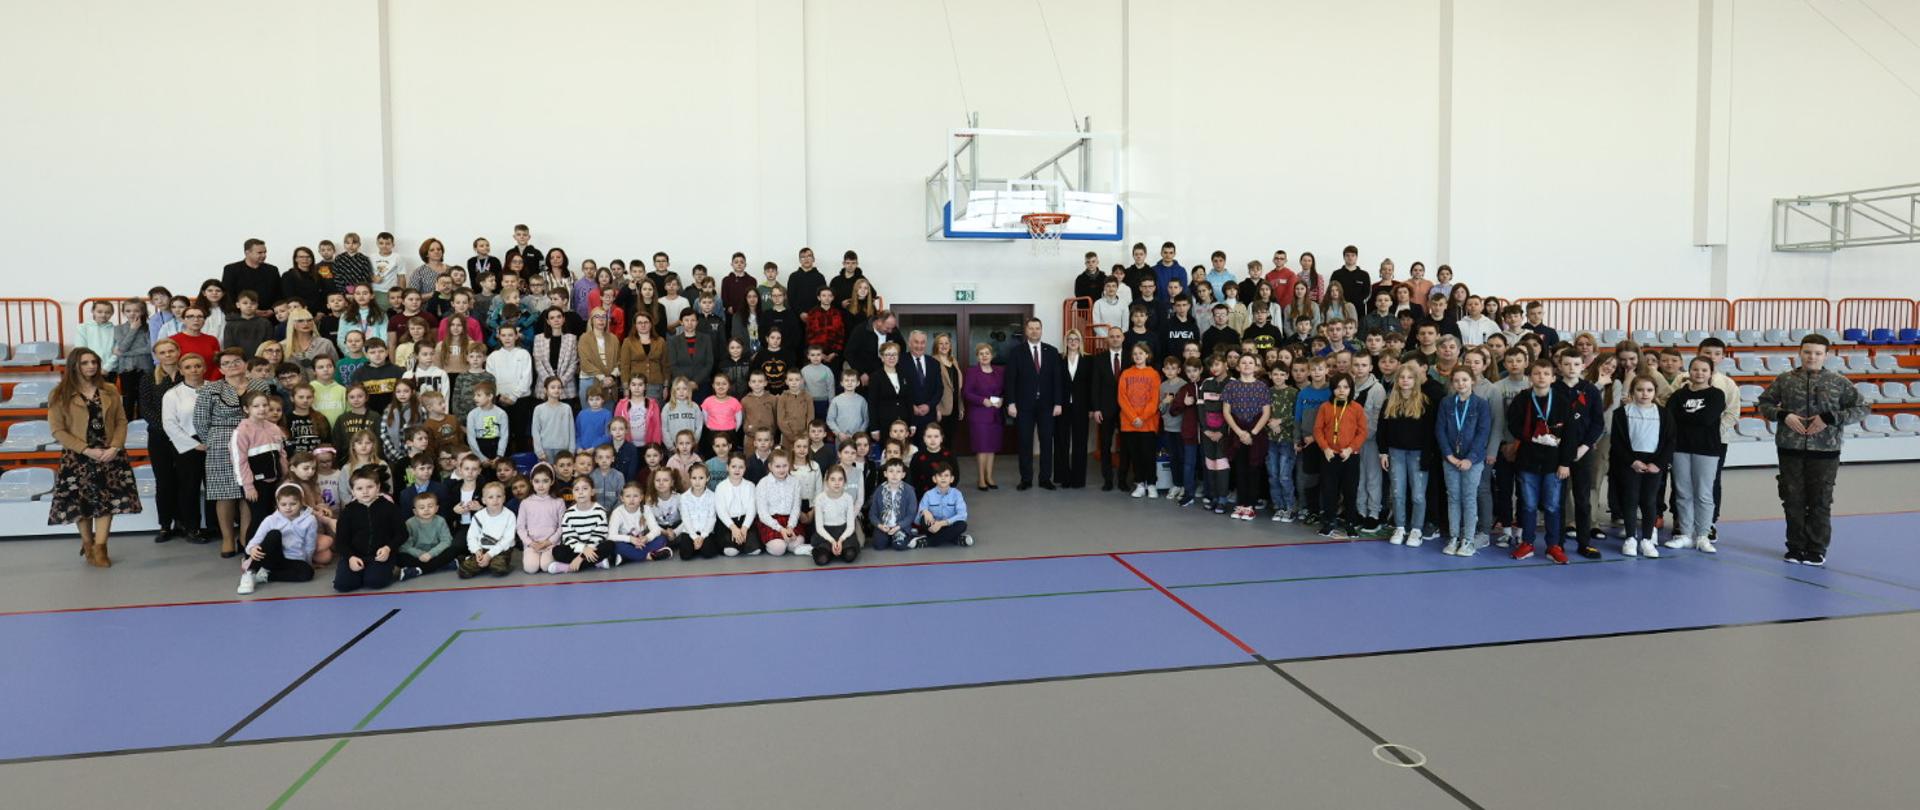 Widok na halę sportową, na szarej podłodze stoją dwie duże grupy kolorowo ubranych dzieci.